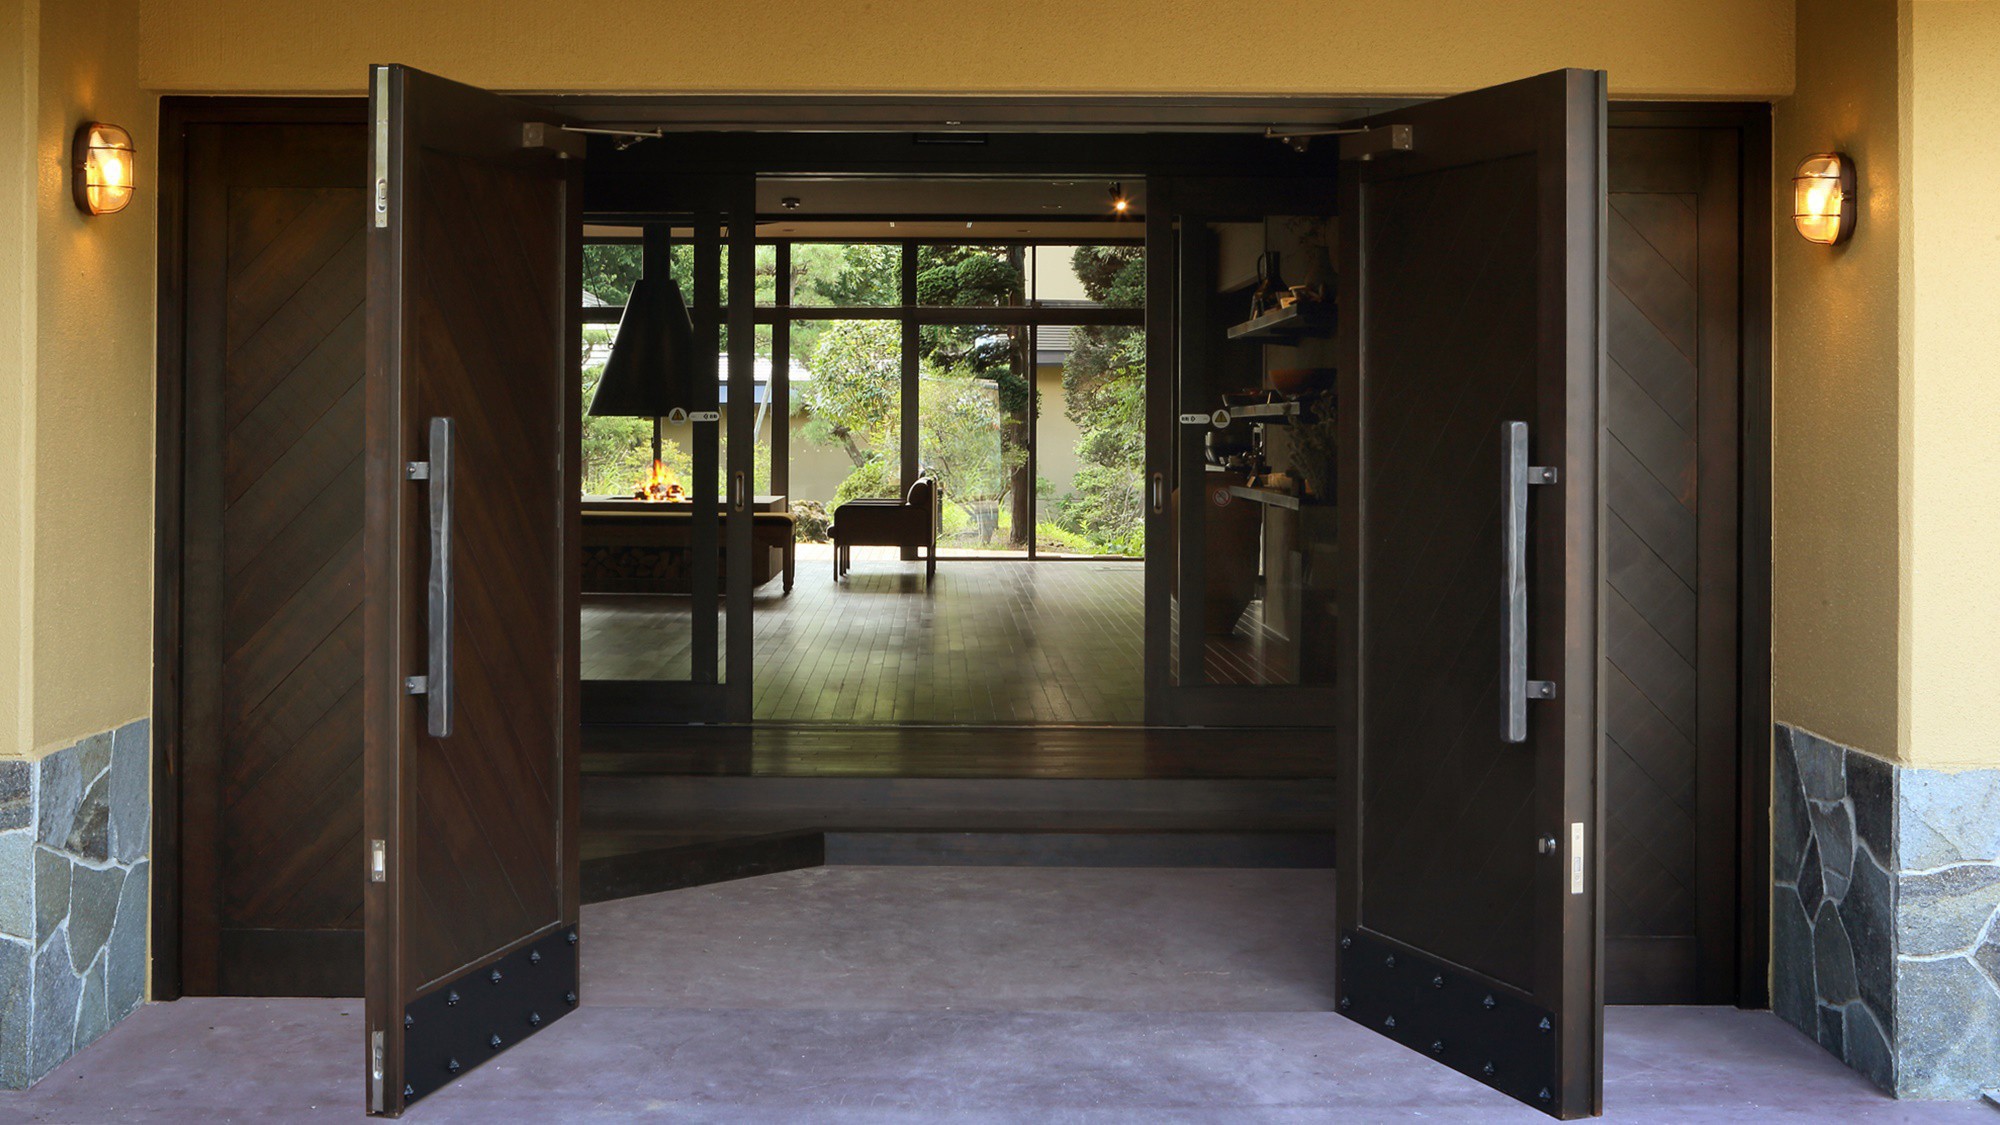 【玄関】重い木製の扉をあけると、自然あふれる森の音空間が広がります